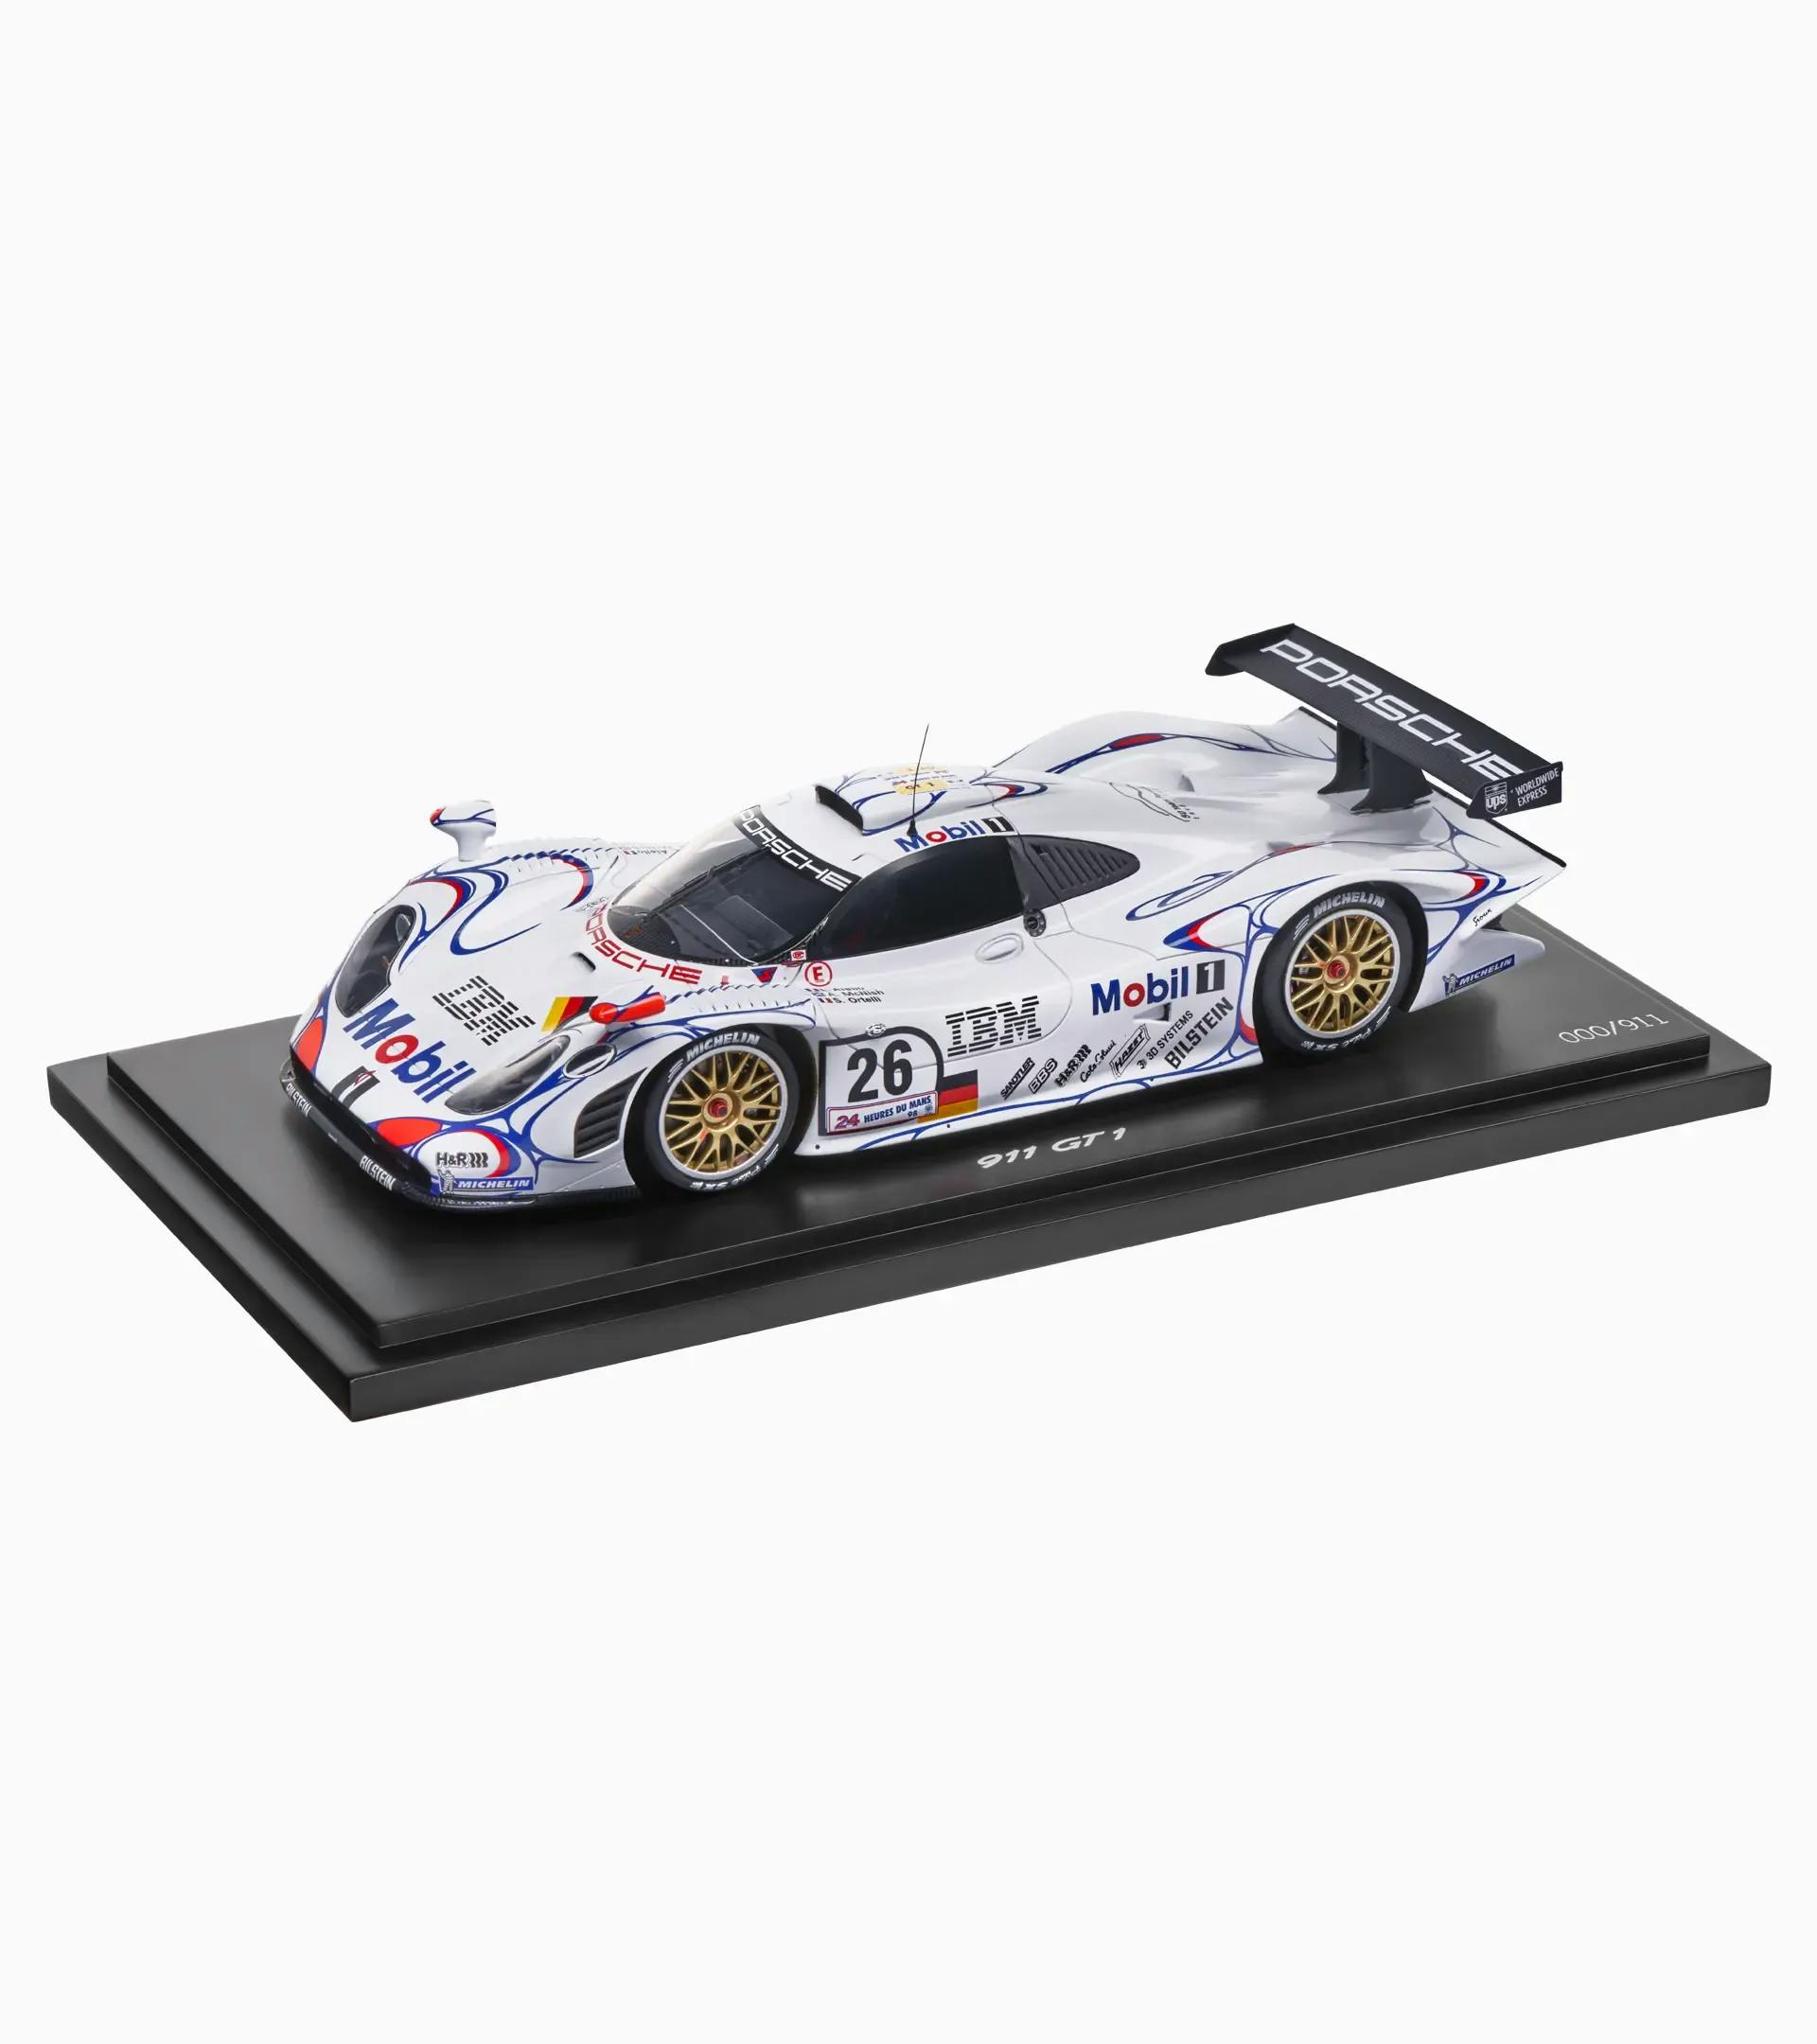 Porsche 911 GT1’98 victorieuse aux 24 Heures du Mans 1998 – Édition limitée 1